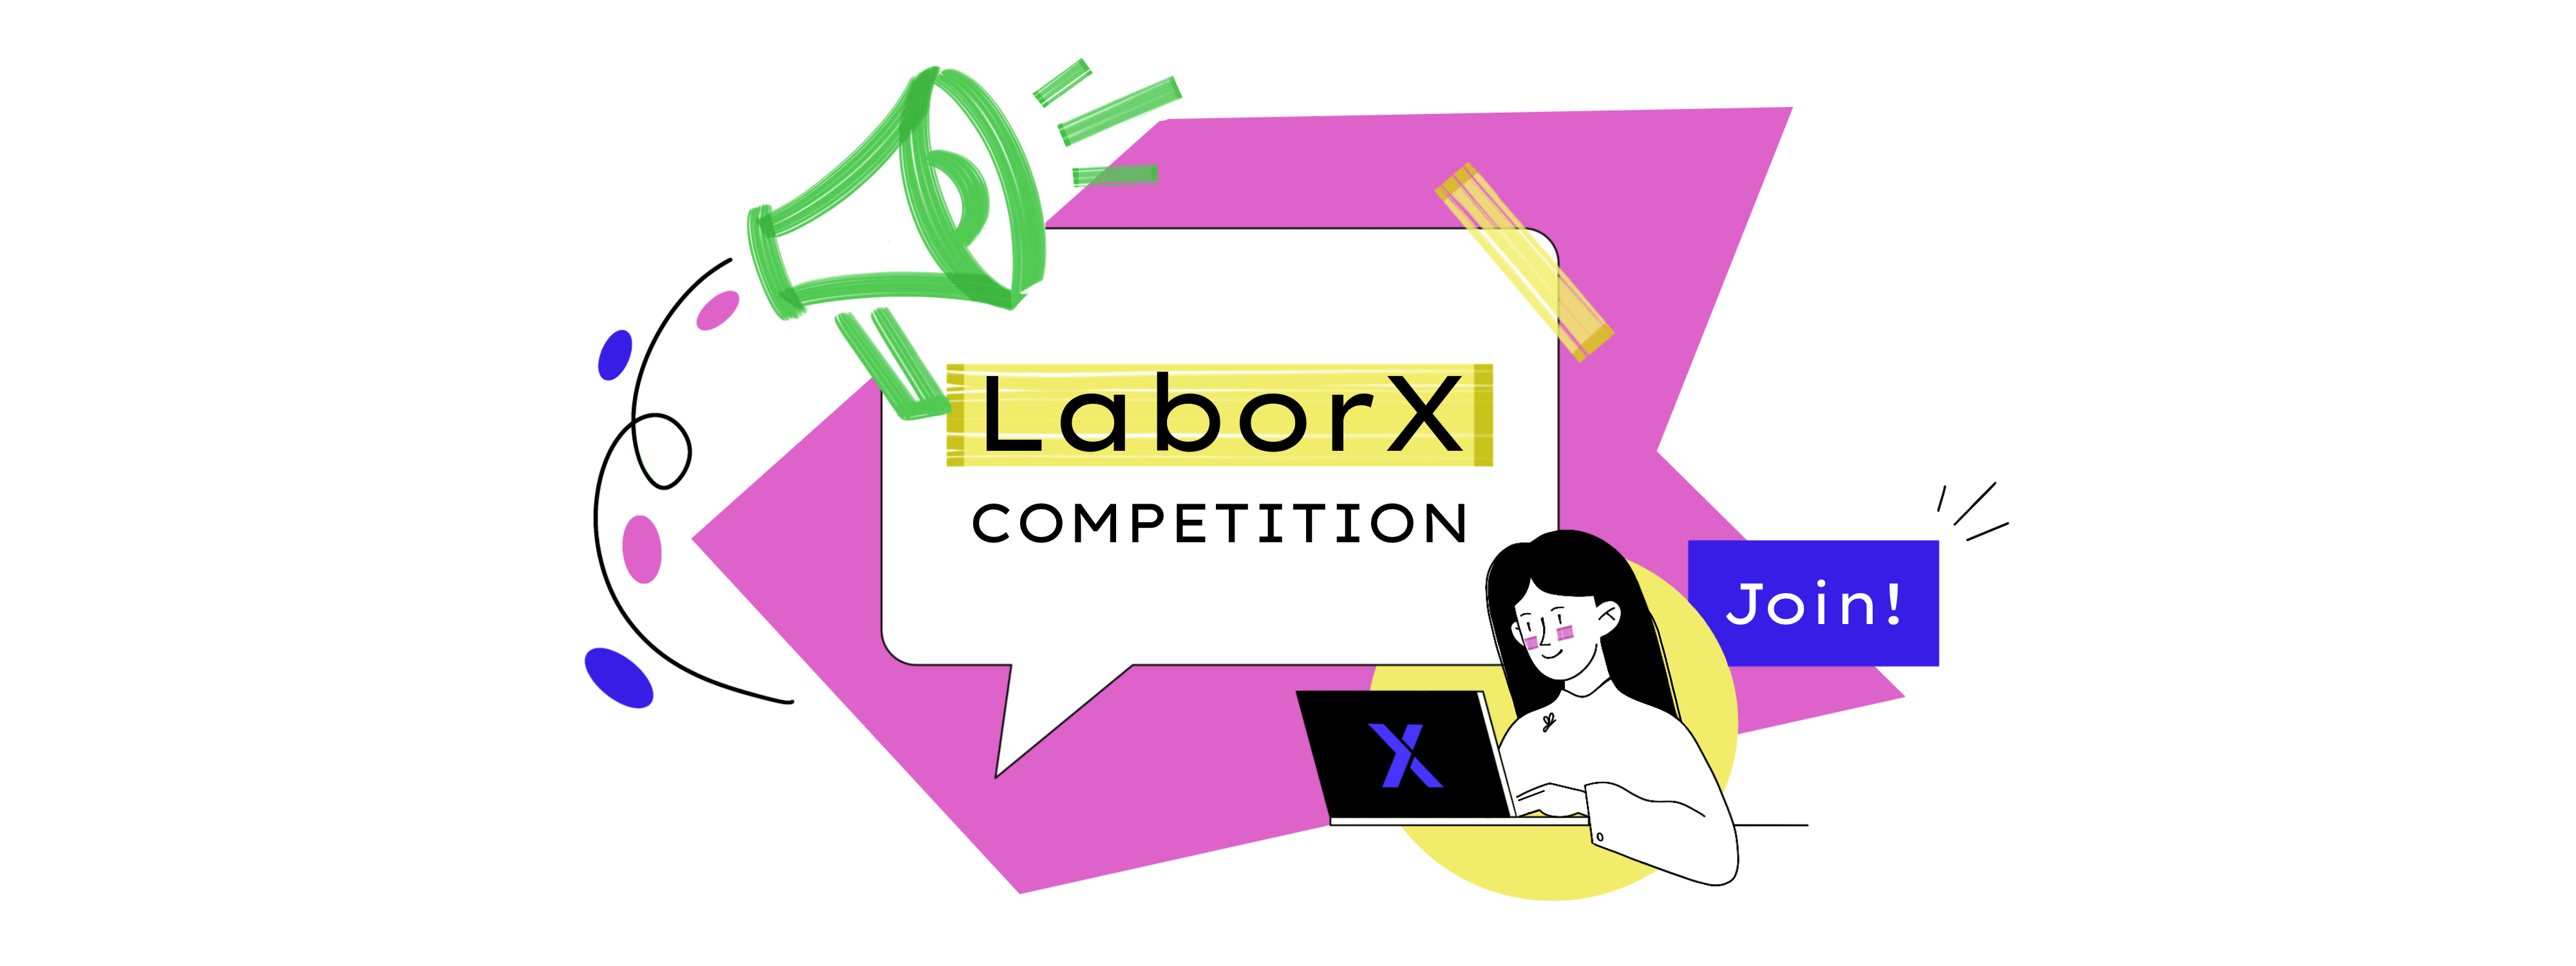 LaborX launches referral contest!